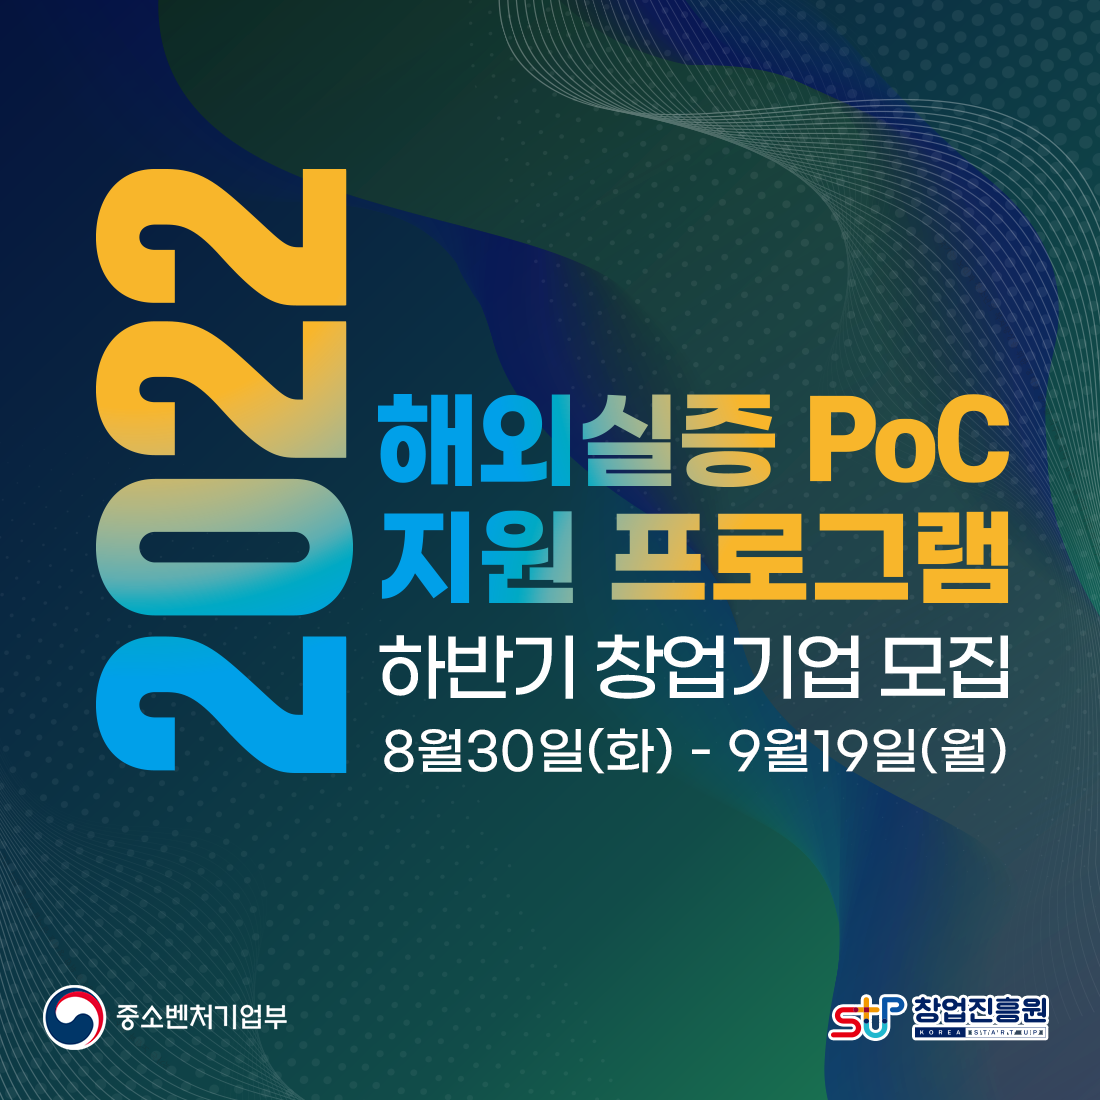 2022
해외실증 PoC
지원 프로그램
하반기 창업기업 모집
8월30일(화) - 9월19일(월)

중소벤처기업부(로고) 창업진흥원(로고)